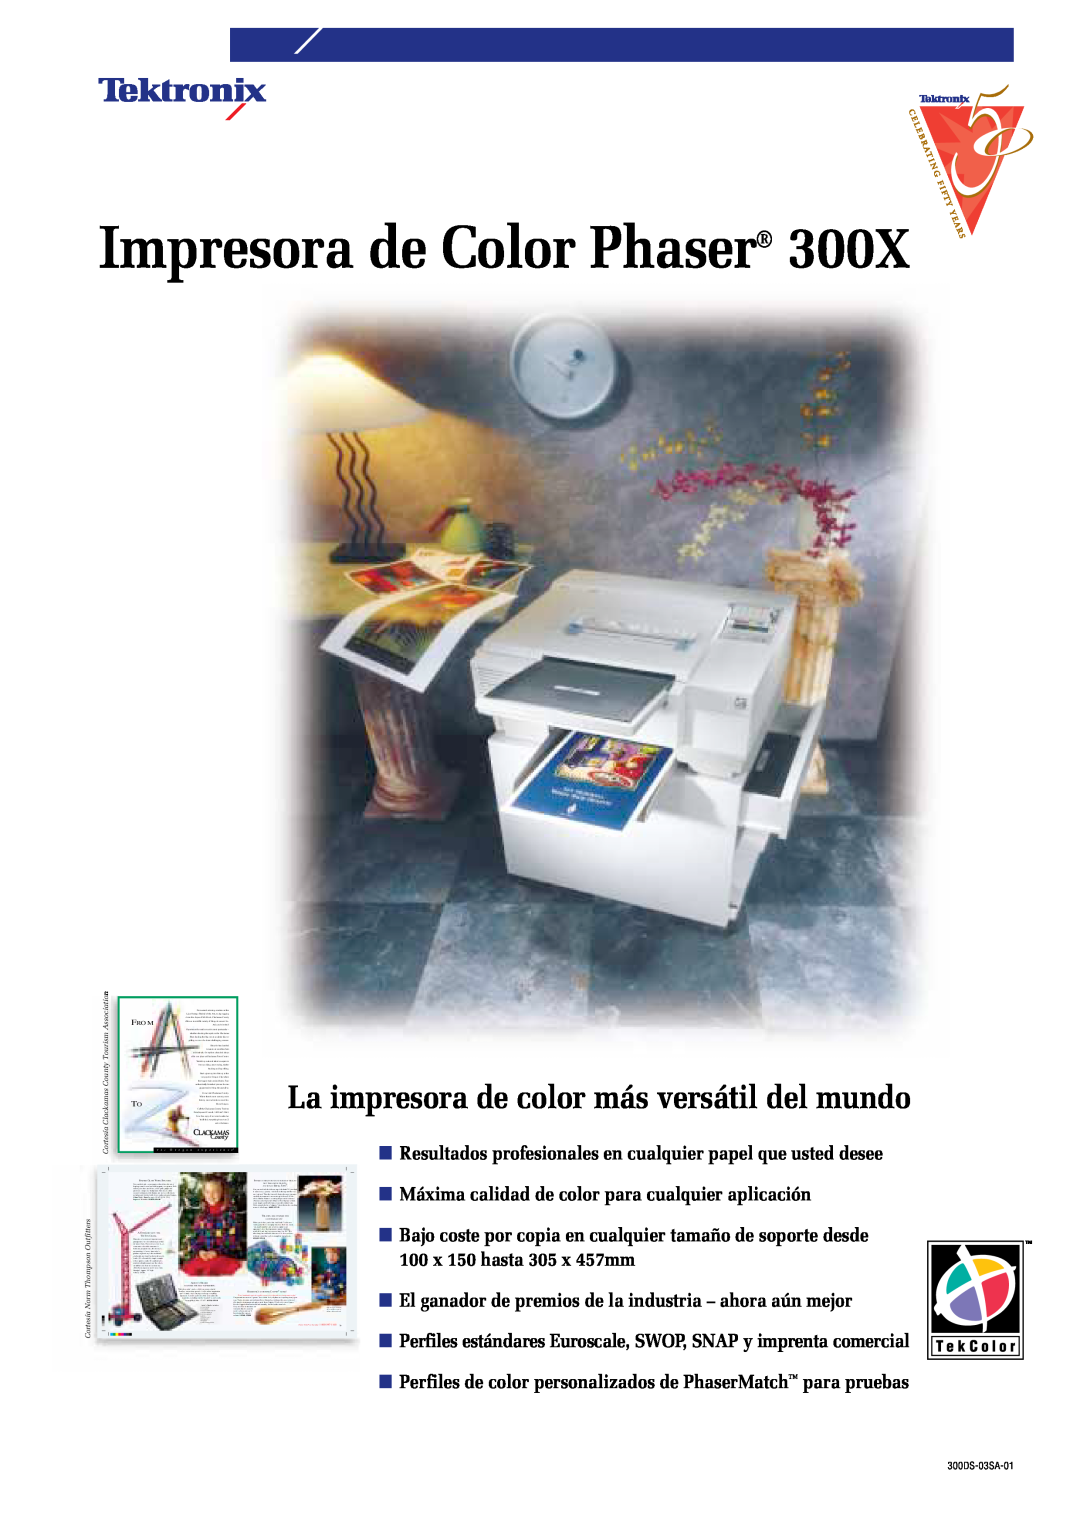 Tektronix 300X manual Impresora de Color Phaser, La impresora de color más versátil del mundo, 100 x 150 hasta 305 x 457mm 